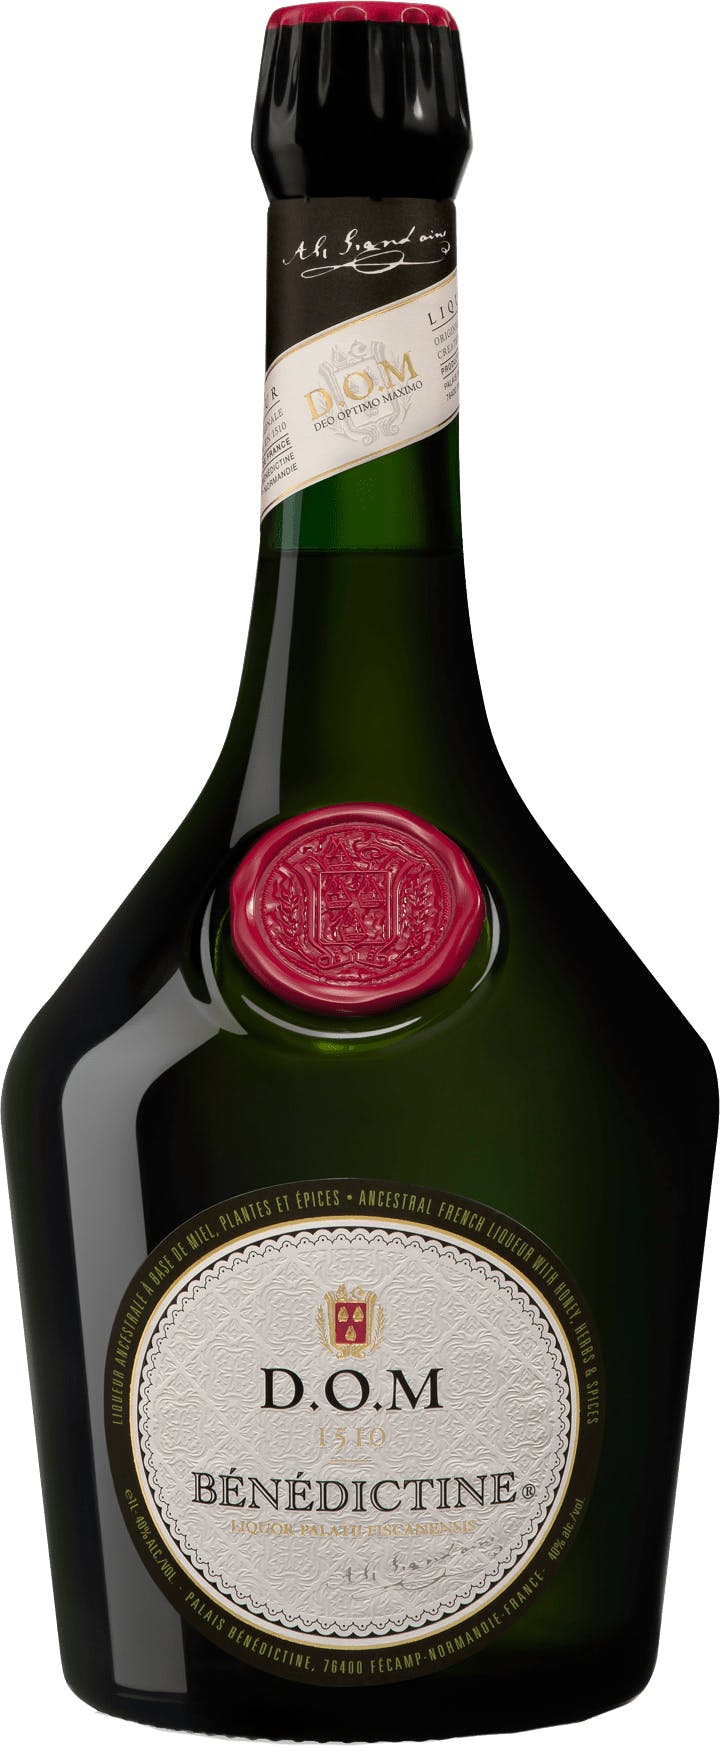 Bénédictine D. O. M . 750ml Liqueur Vine Republic 